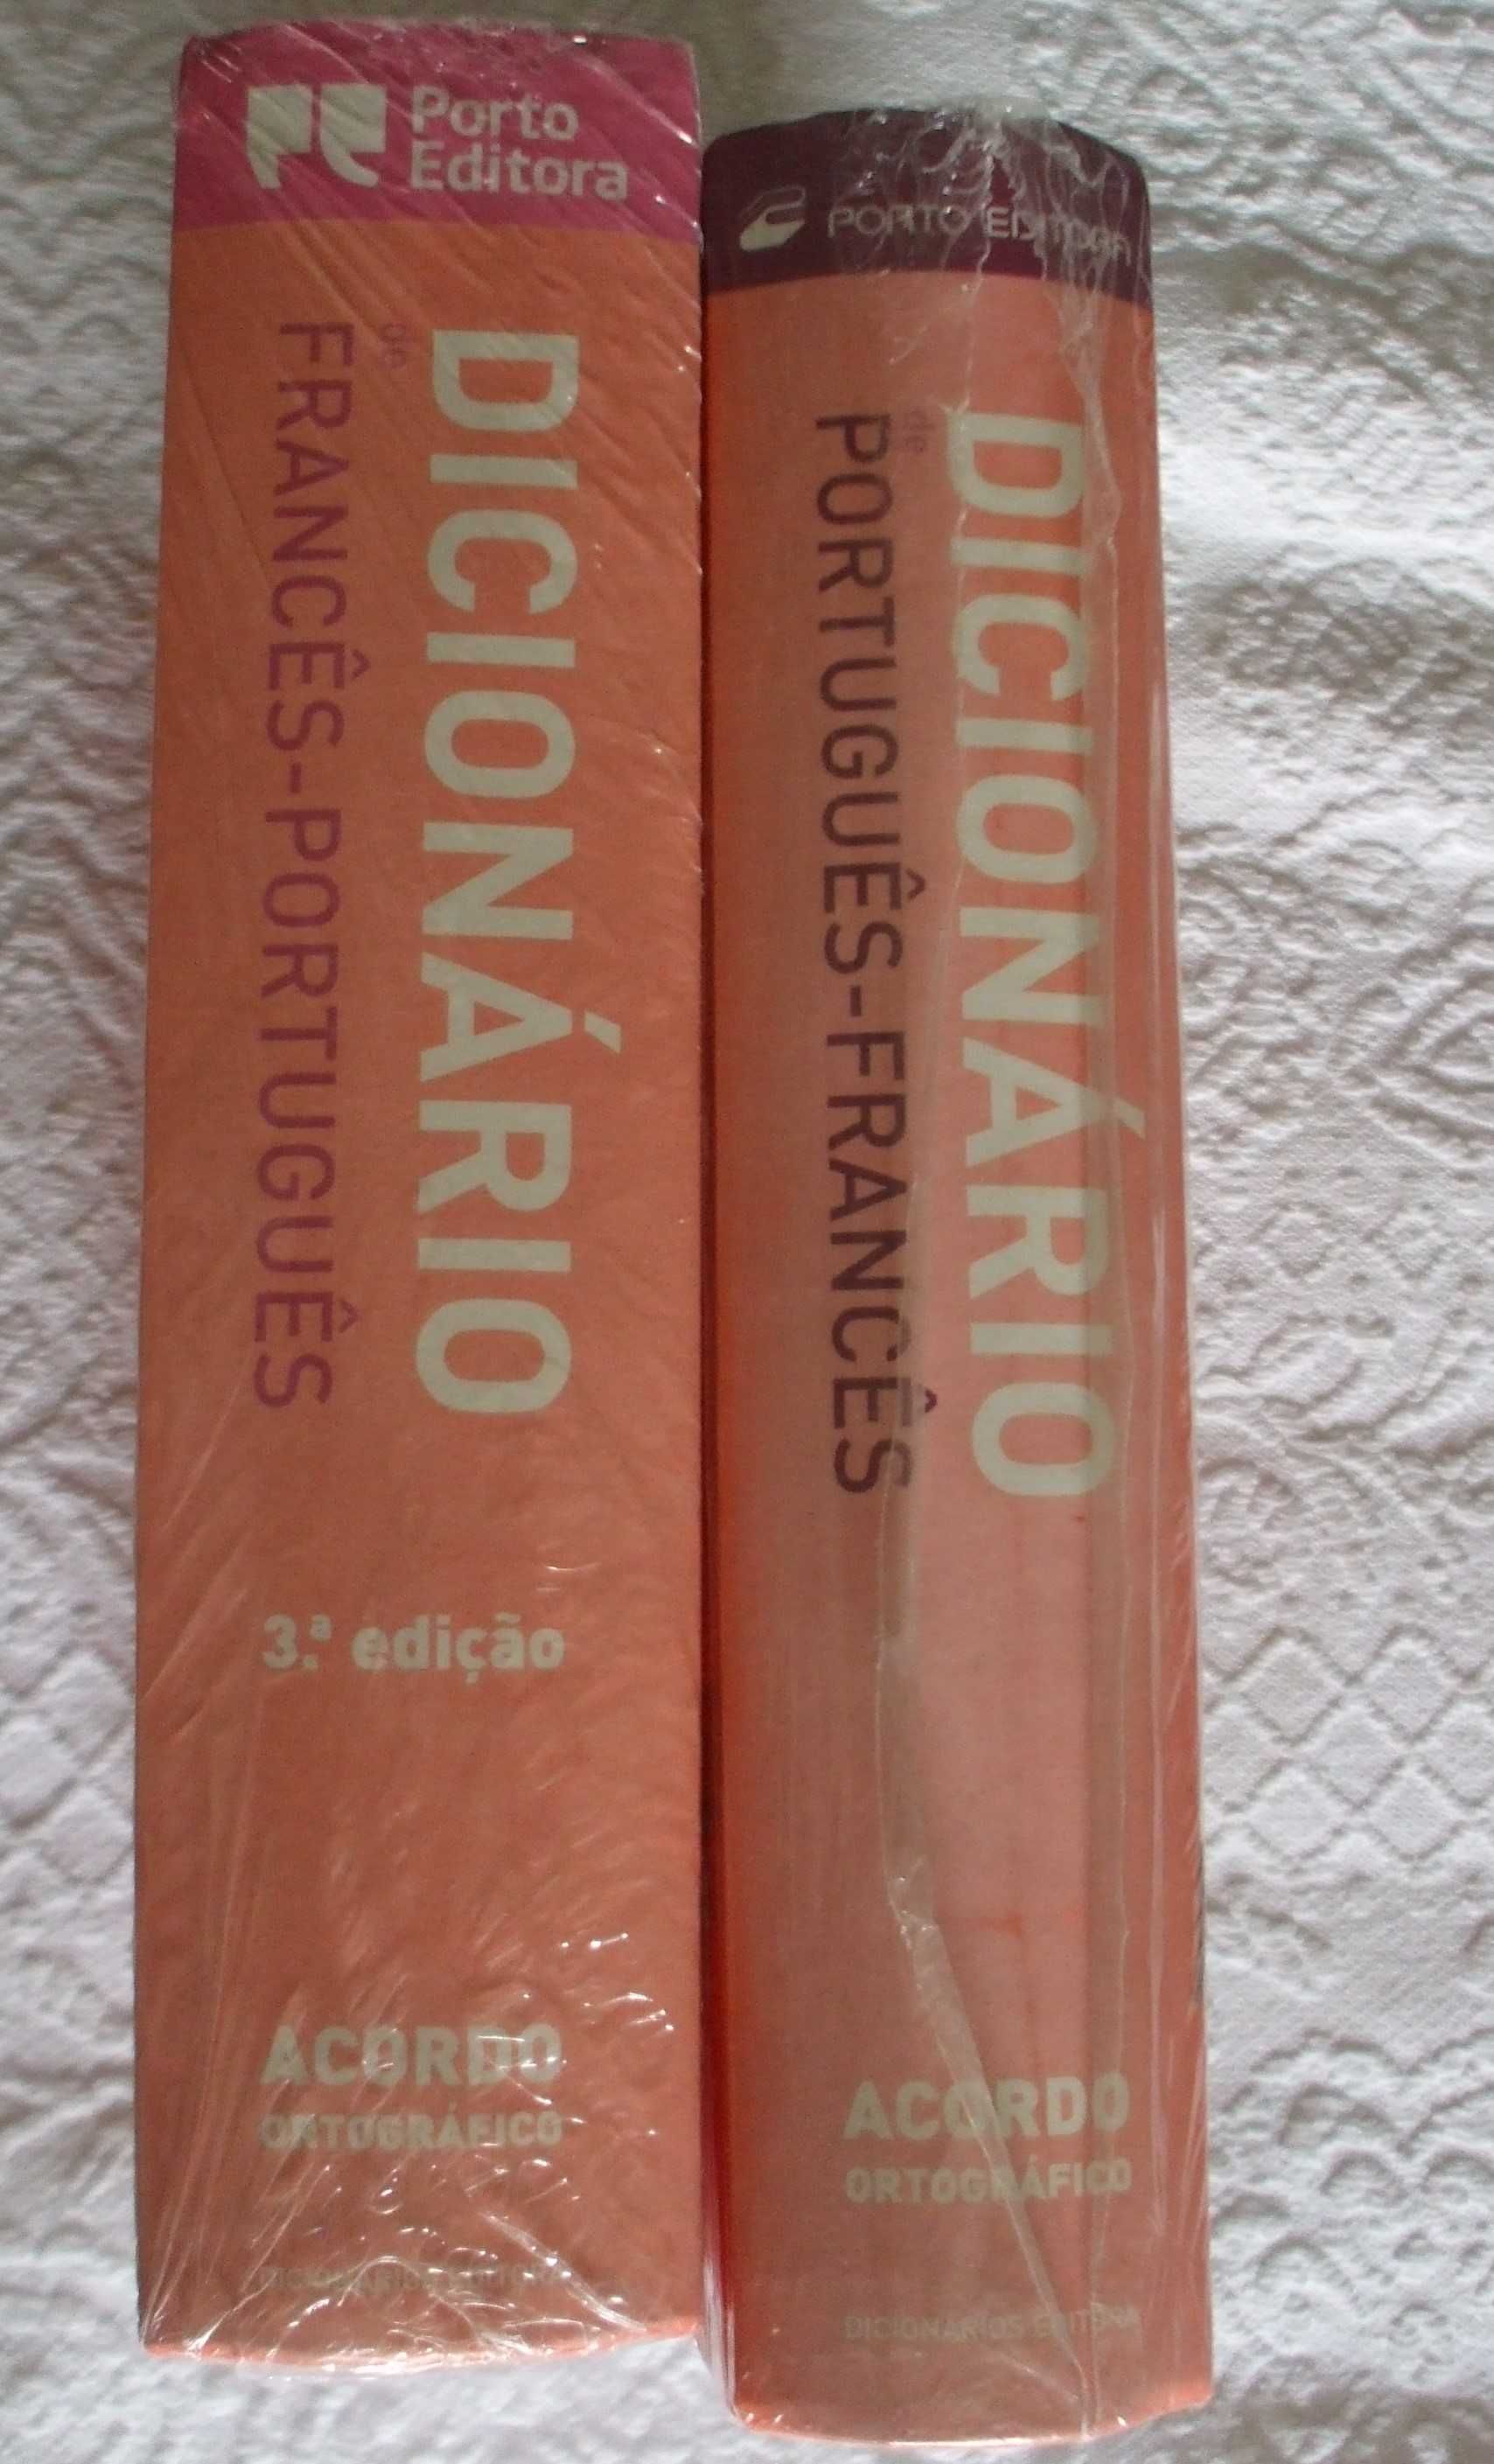 Dicionários Francês-Português/Português-Francês novos (2 volumes)